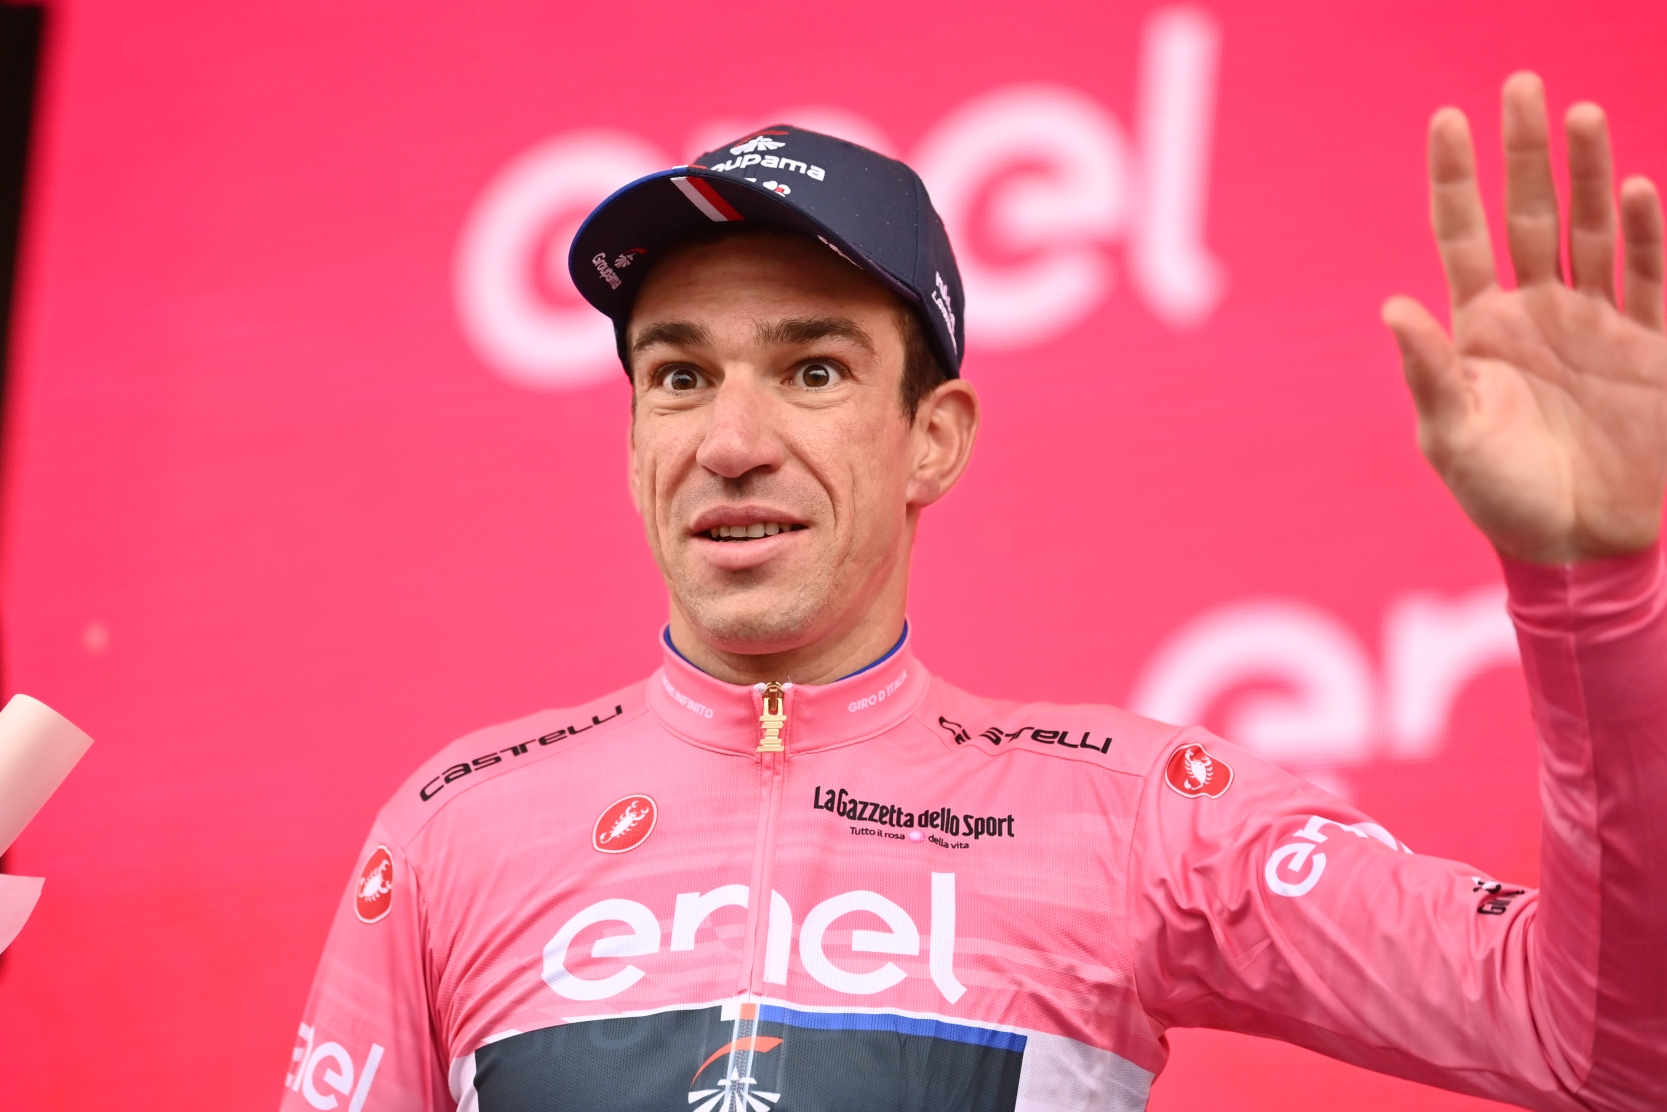 Bruno Armirail w koszulce lidera Giro d'Italia